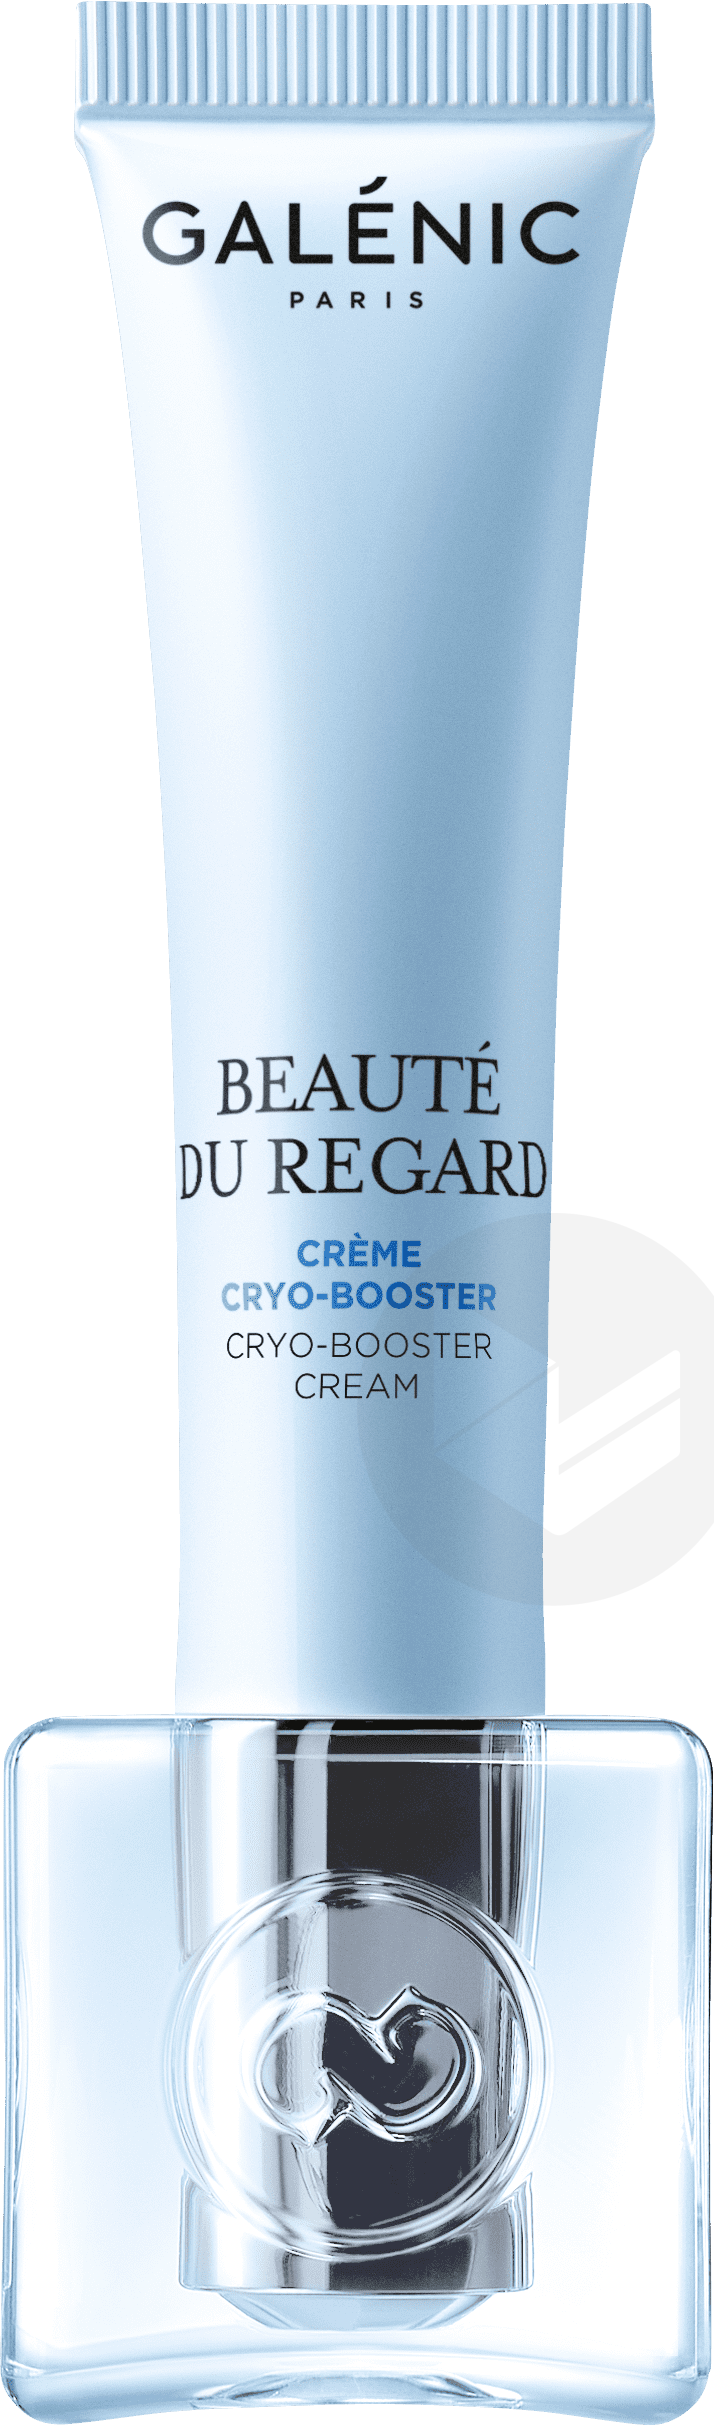 Crème cryo-booster 15ml